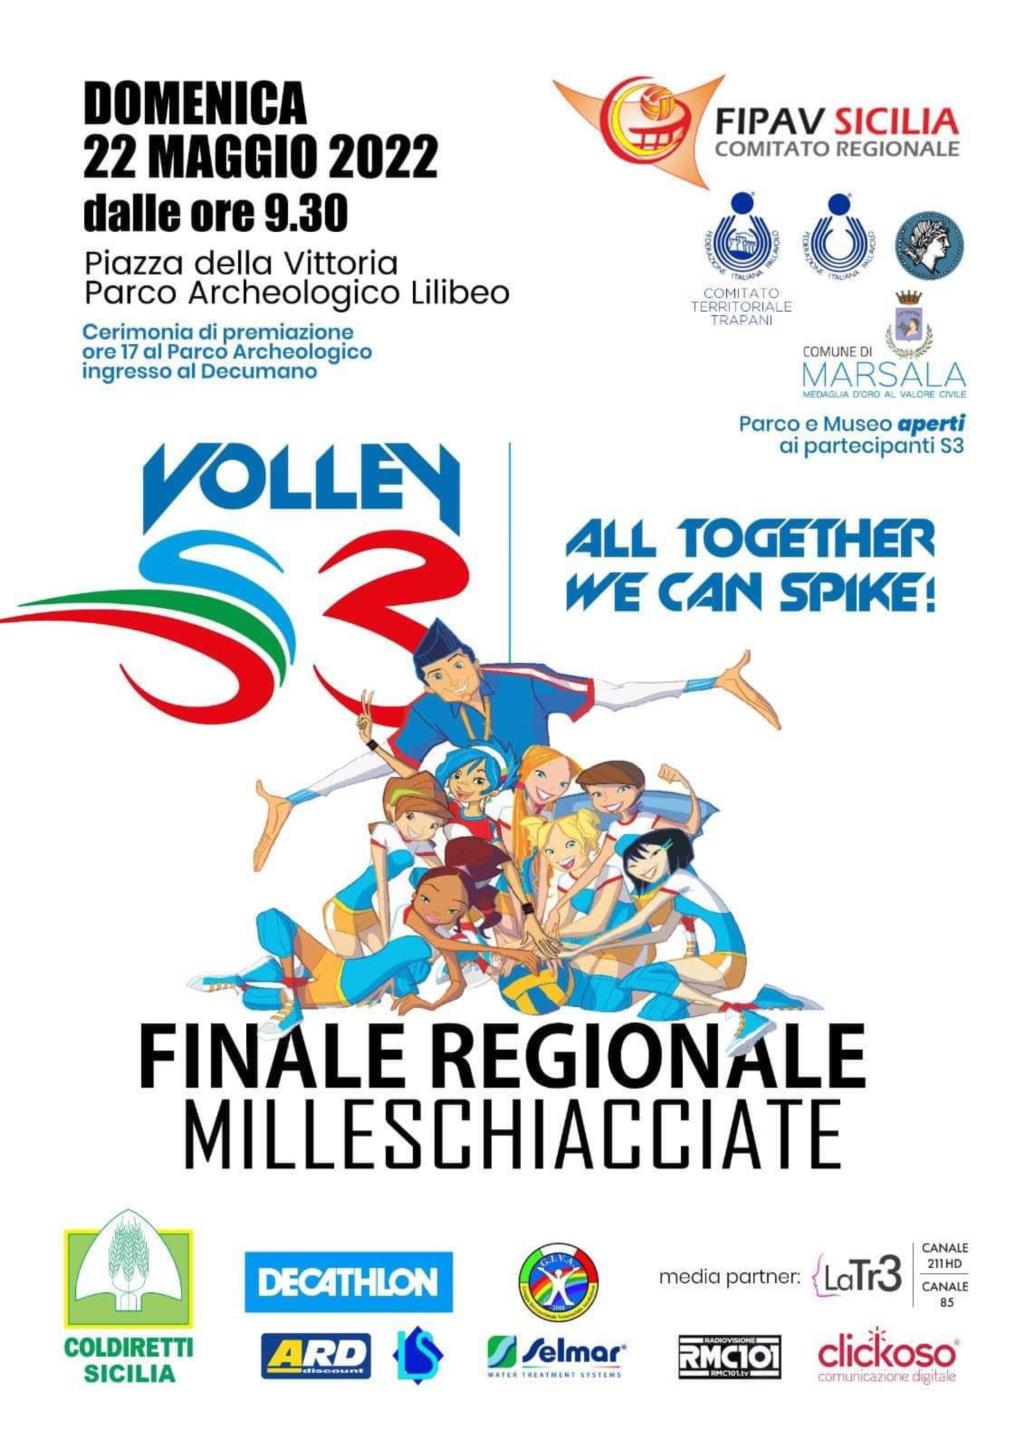 Domenica a Marsala la finale siciliana di Pallavolo dei settori giovanili